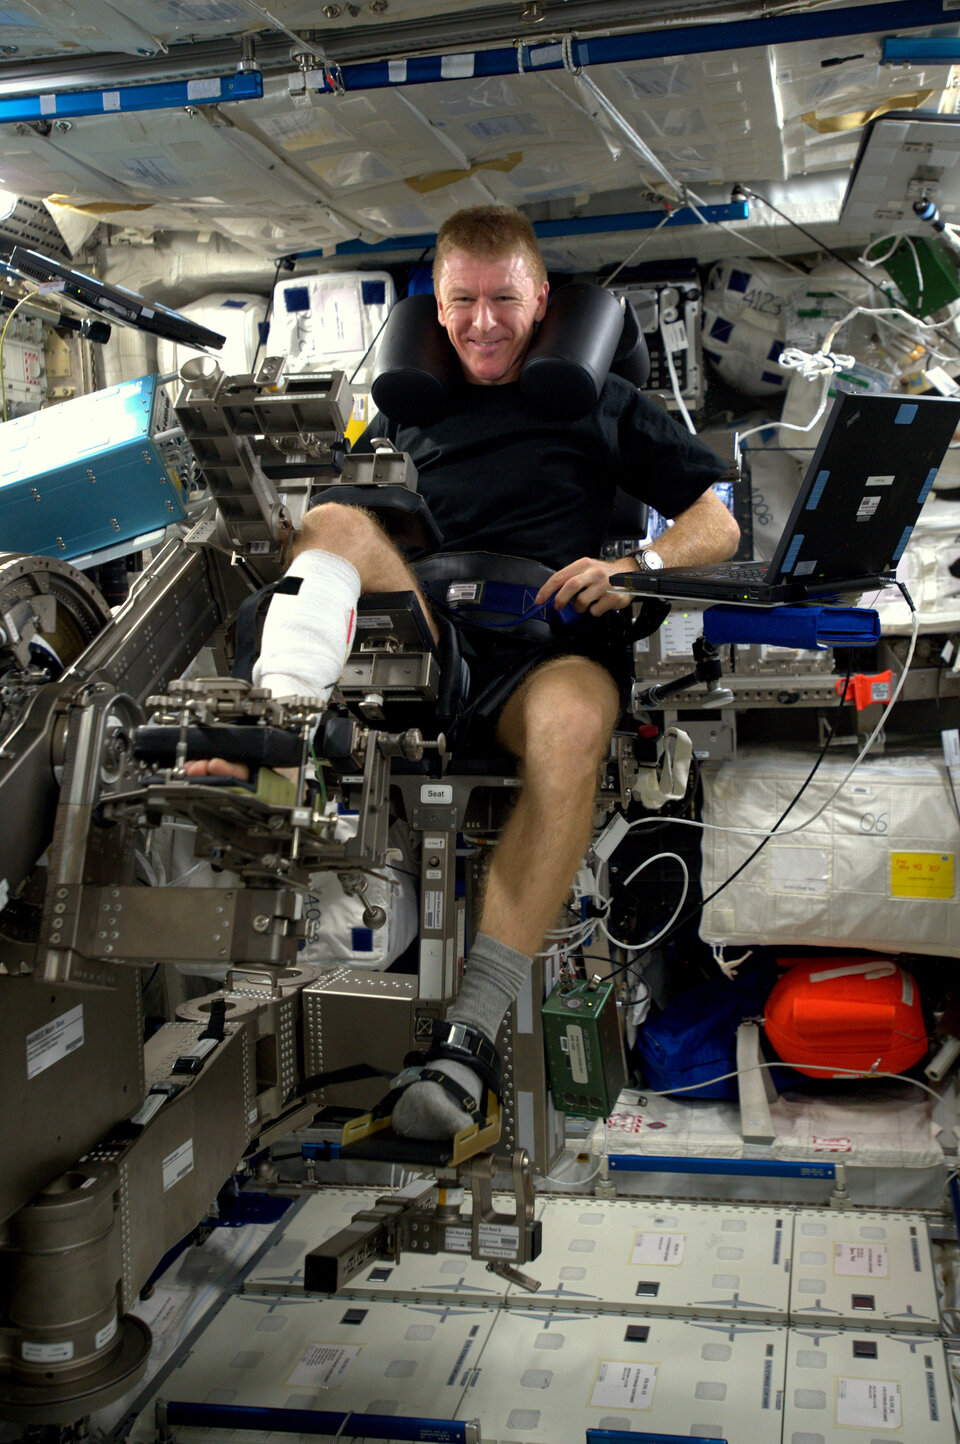 ESA astronaut Tim Peake using Mares in space 